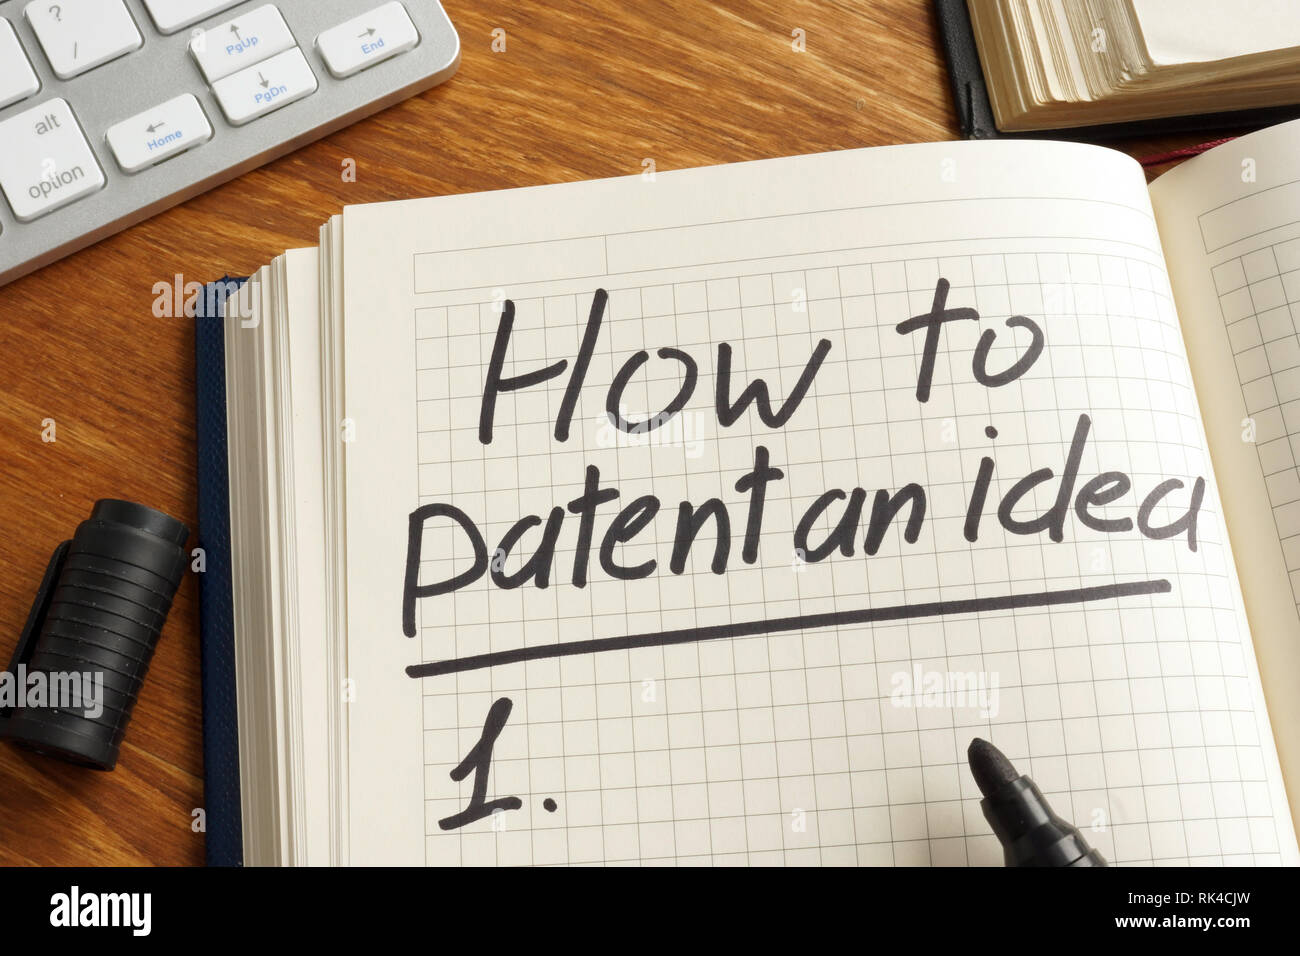 Wie Patent eine Idee, die in der Notiz geschrieben. Urheberrecht. Stockfoto